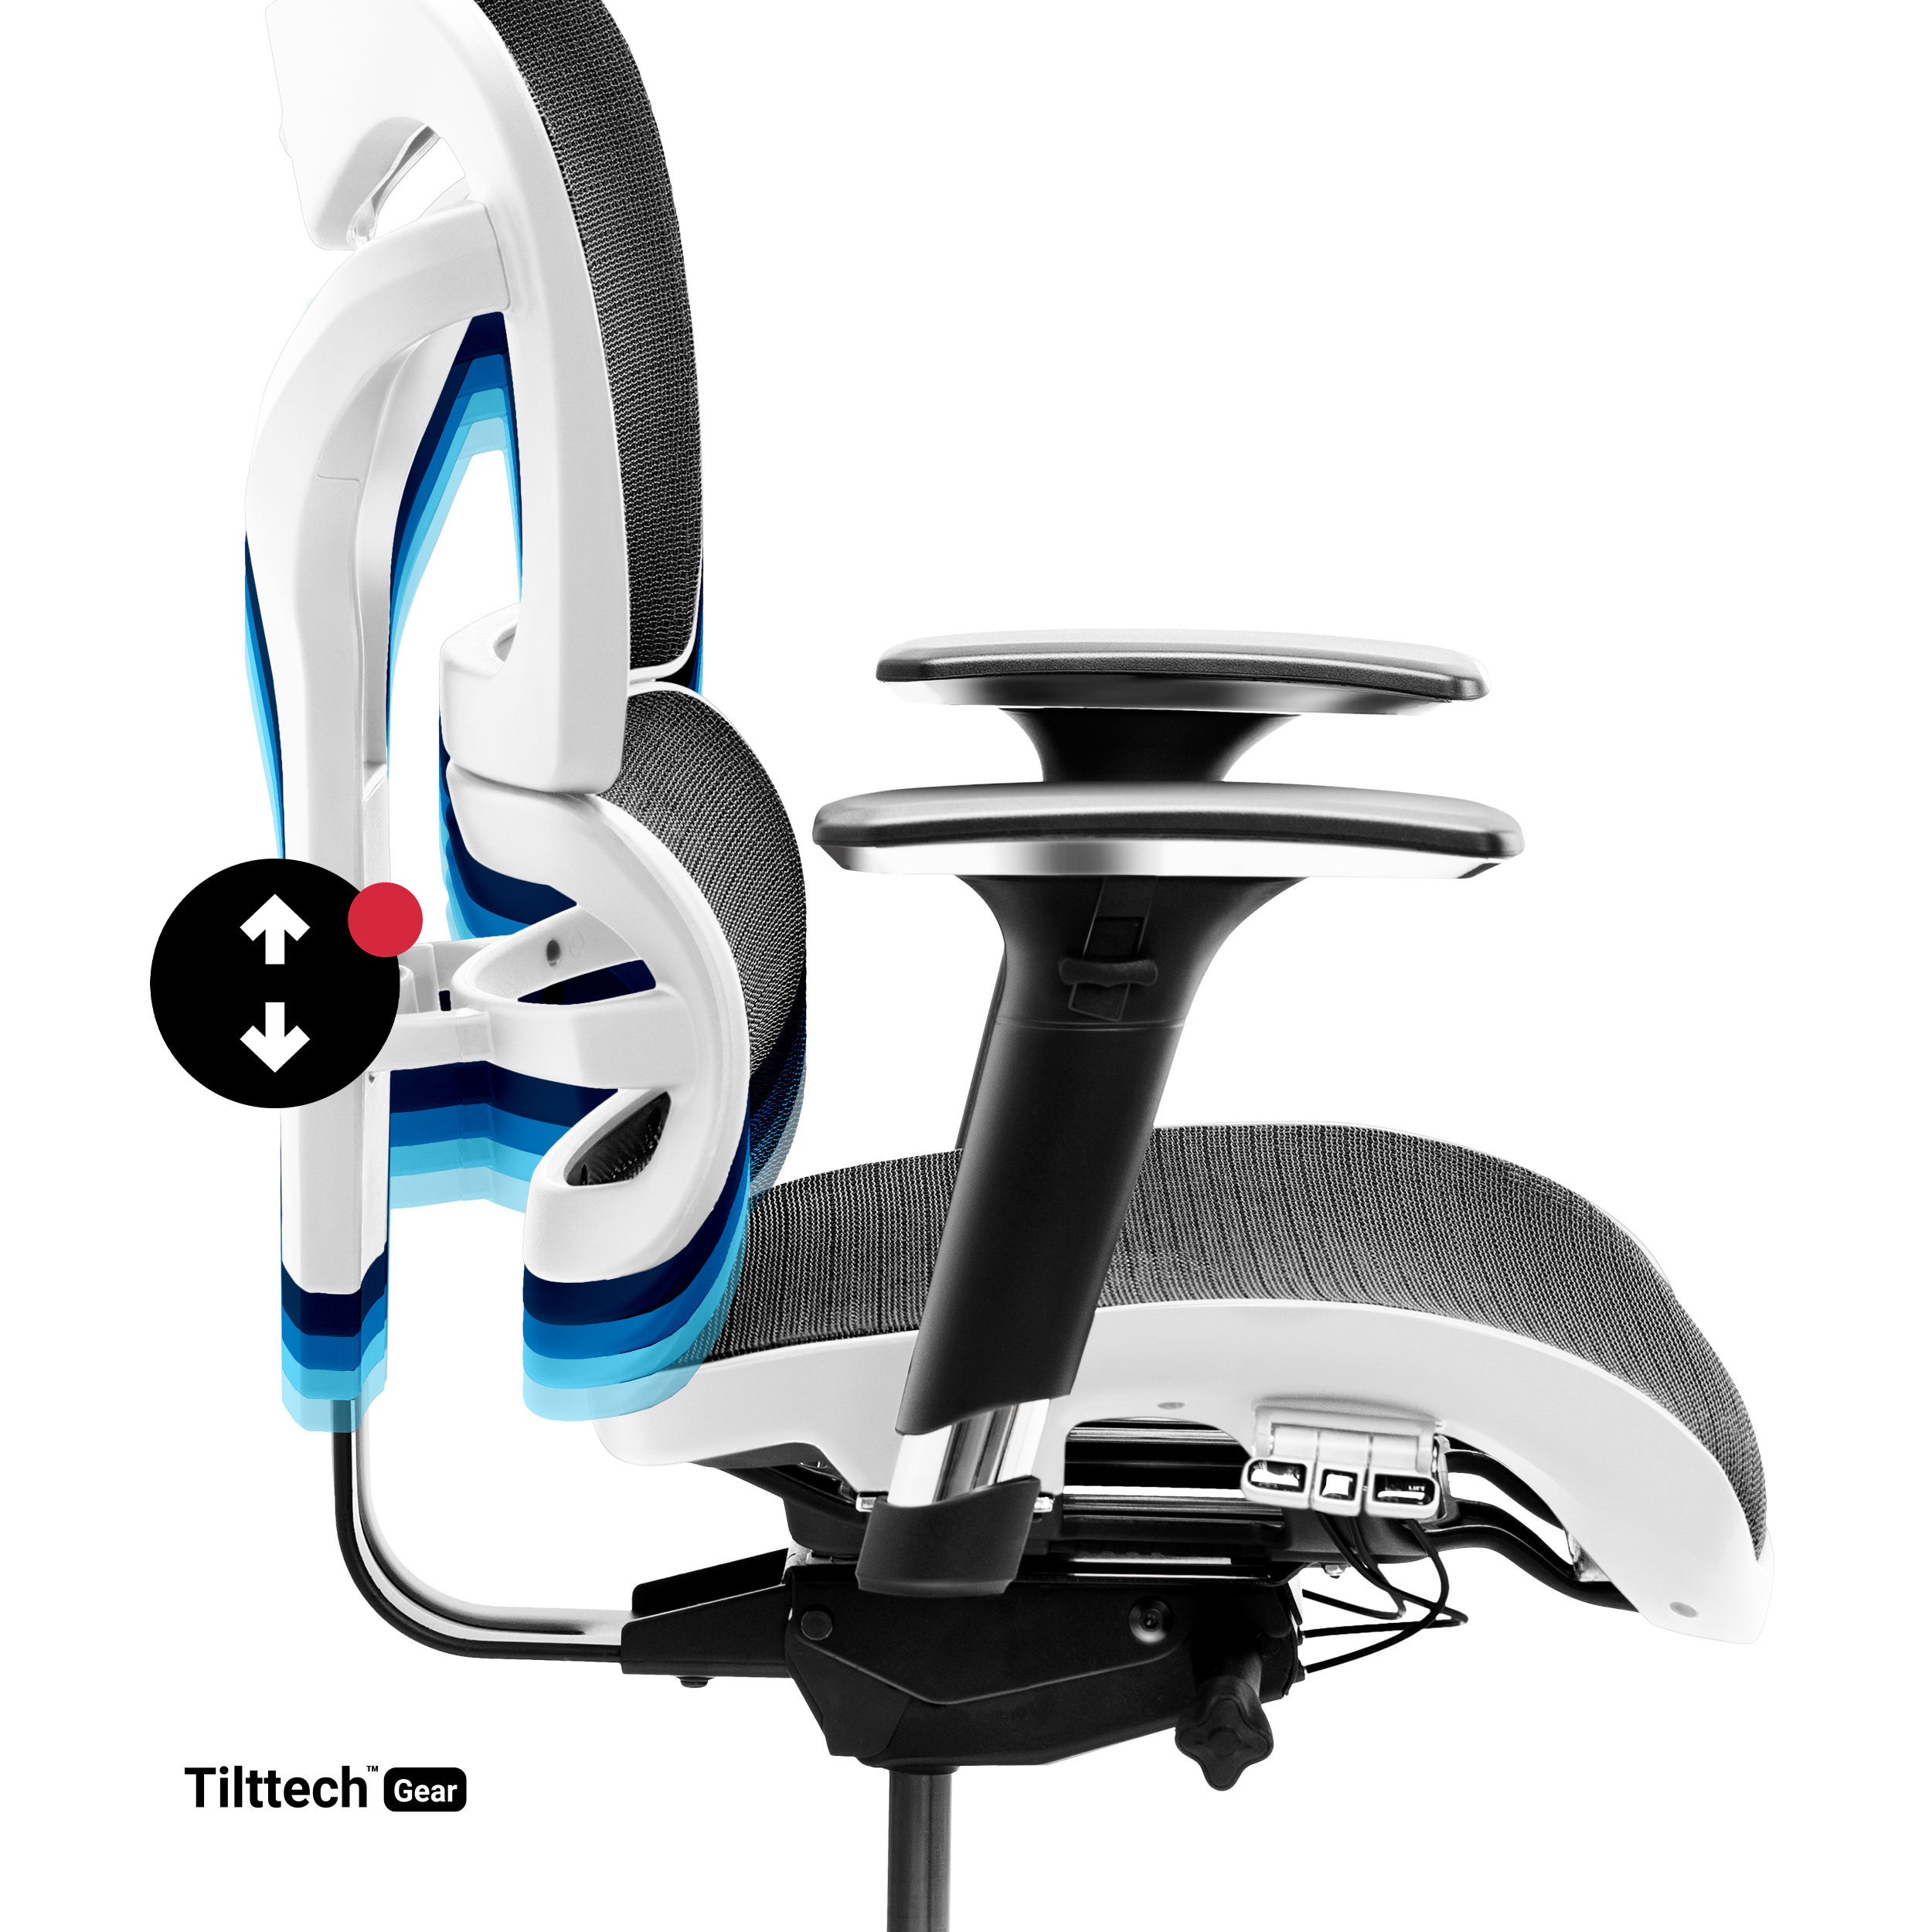 schwarz-weiß V-COMMANDER Schreibtischstuhl CHAIRS | Bürostuhl Stuhl | BÜROSTUHL DIABLO Ergonomischer